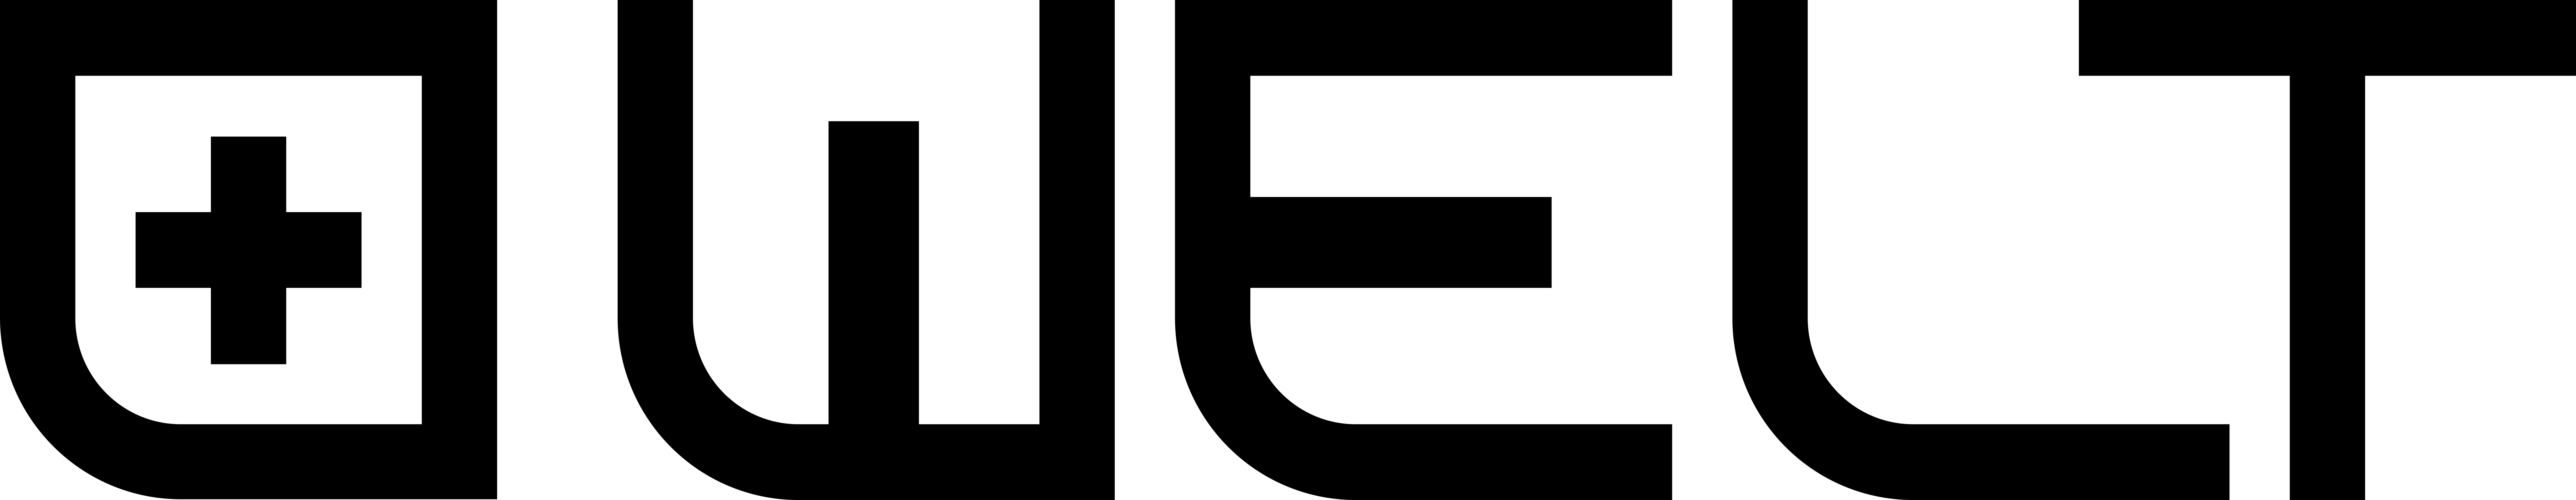 웰트 Logo